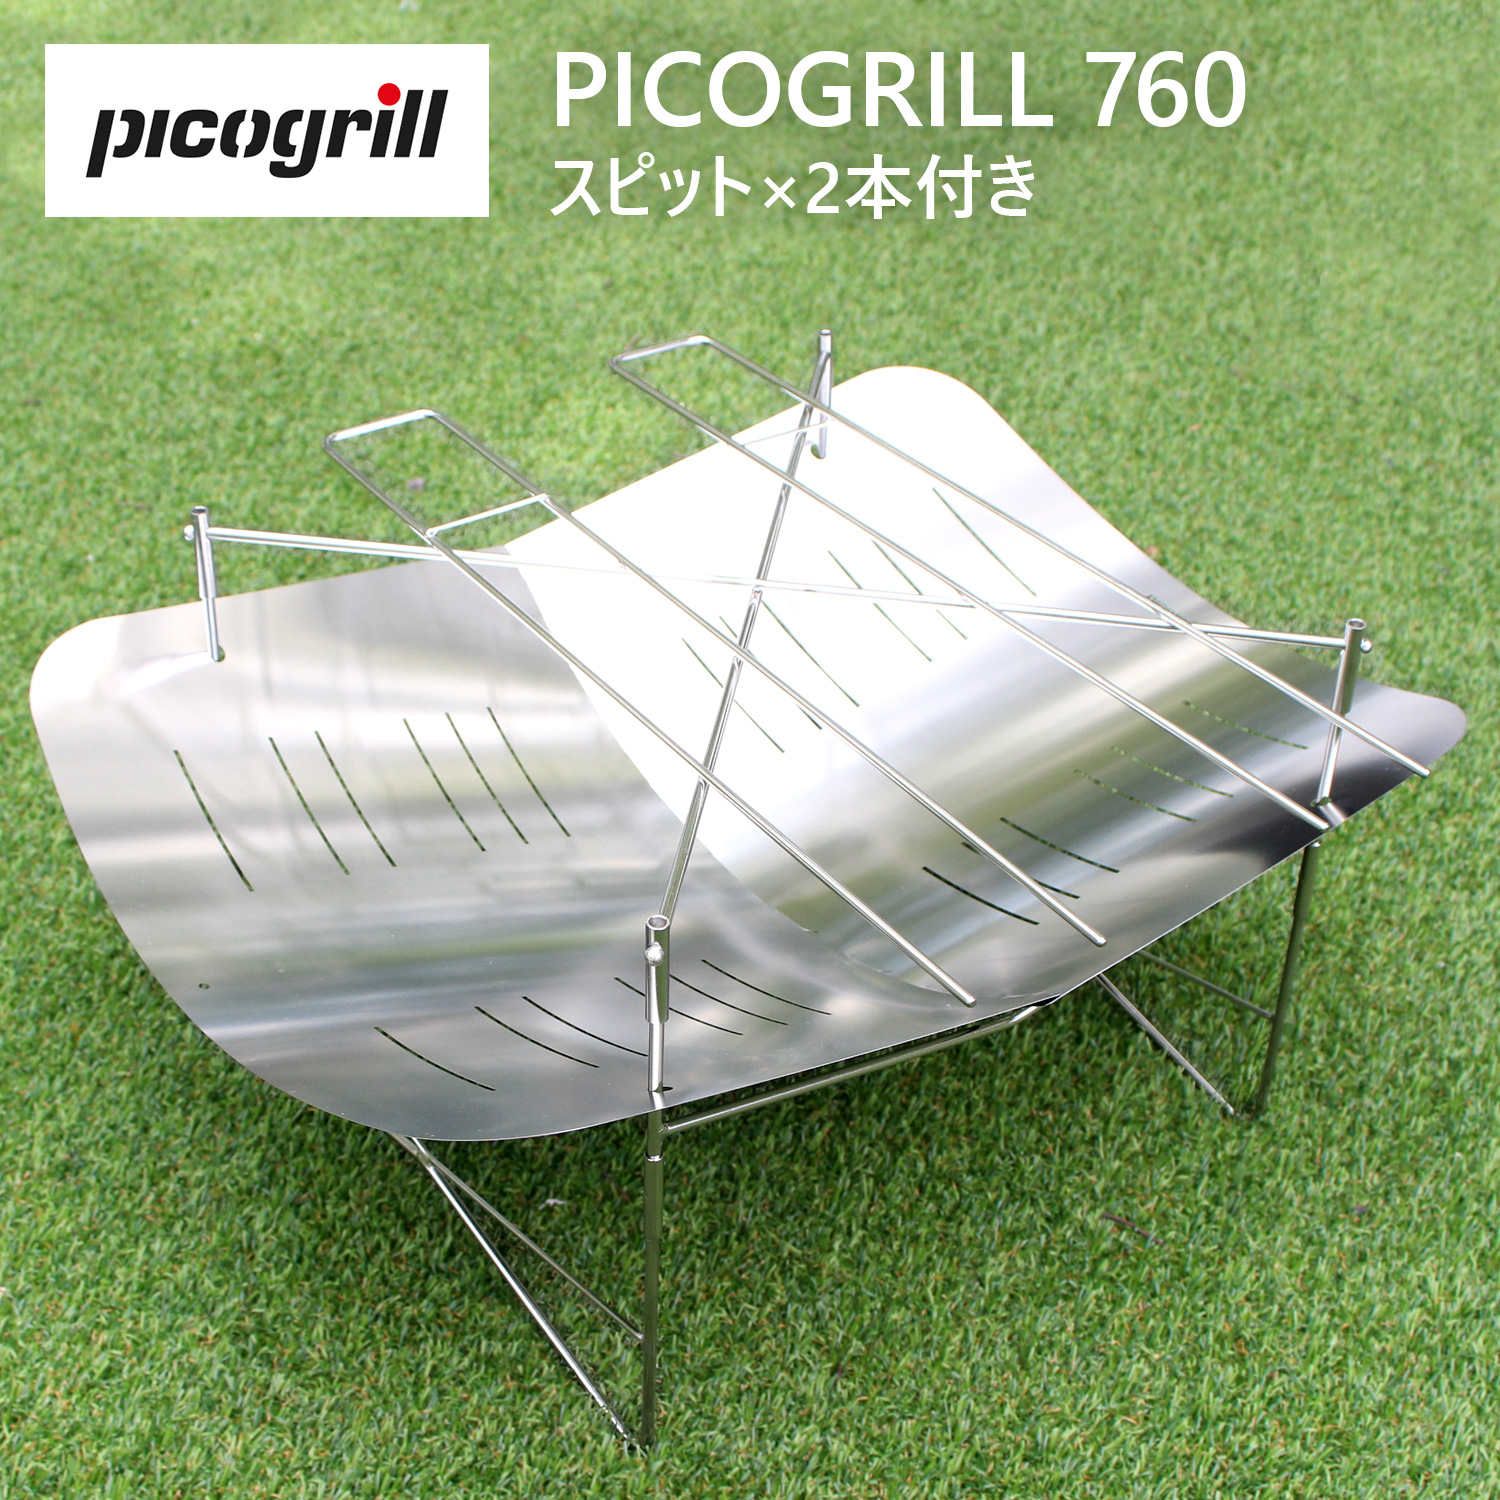 picogrill ピコグリル picogrill760 ピコグリル760 アウトドア グリル 焚火台 焚き火台 キャンプ 調理器具 メンズ  レディース シルバー 送料無料